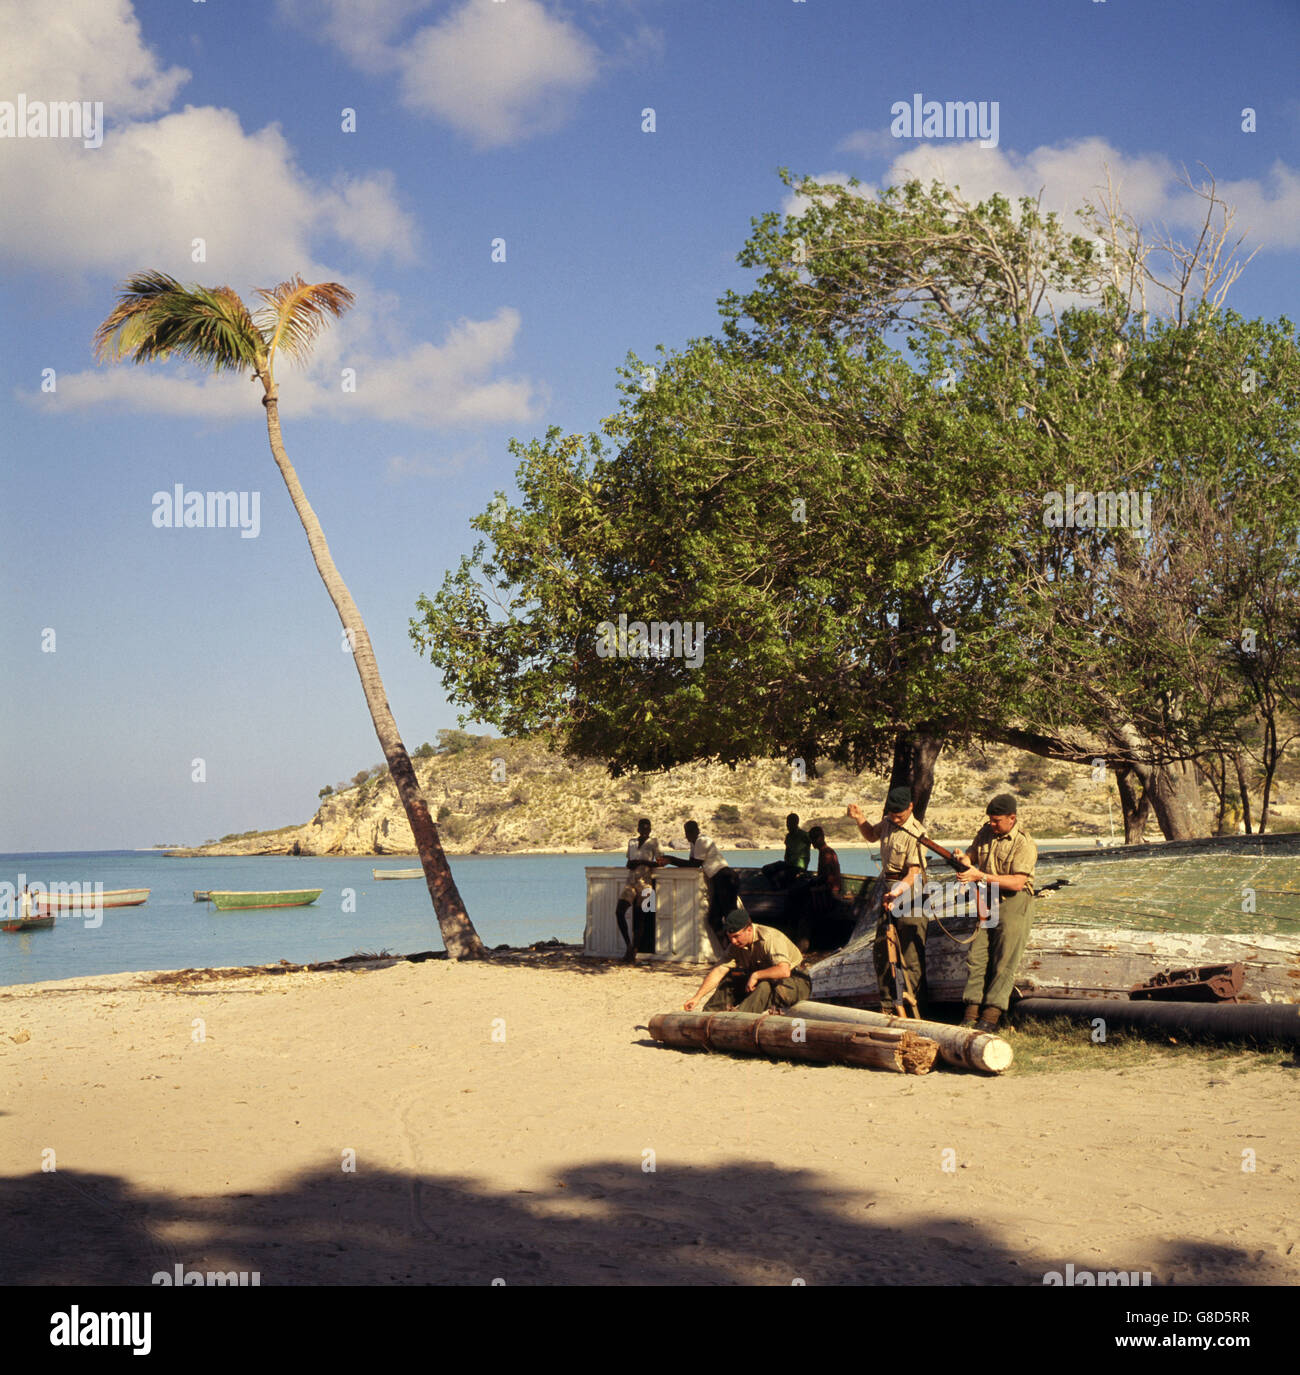 Royal Marines reinigen ihre Waffen im Schatten eines Baumes am sonnenbeschienenen Meer auf Anguilla. Britische Truppen sowie britischer Polizist wurden nach politischen Unruhen auf die Insel geschickt. Die Insel hat sich für die Unabhängigkeit von Großbritannien eingesetzt. Stockfoto